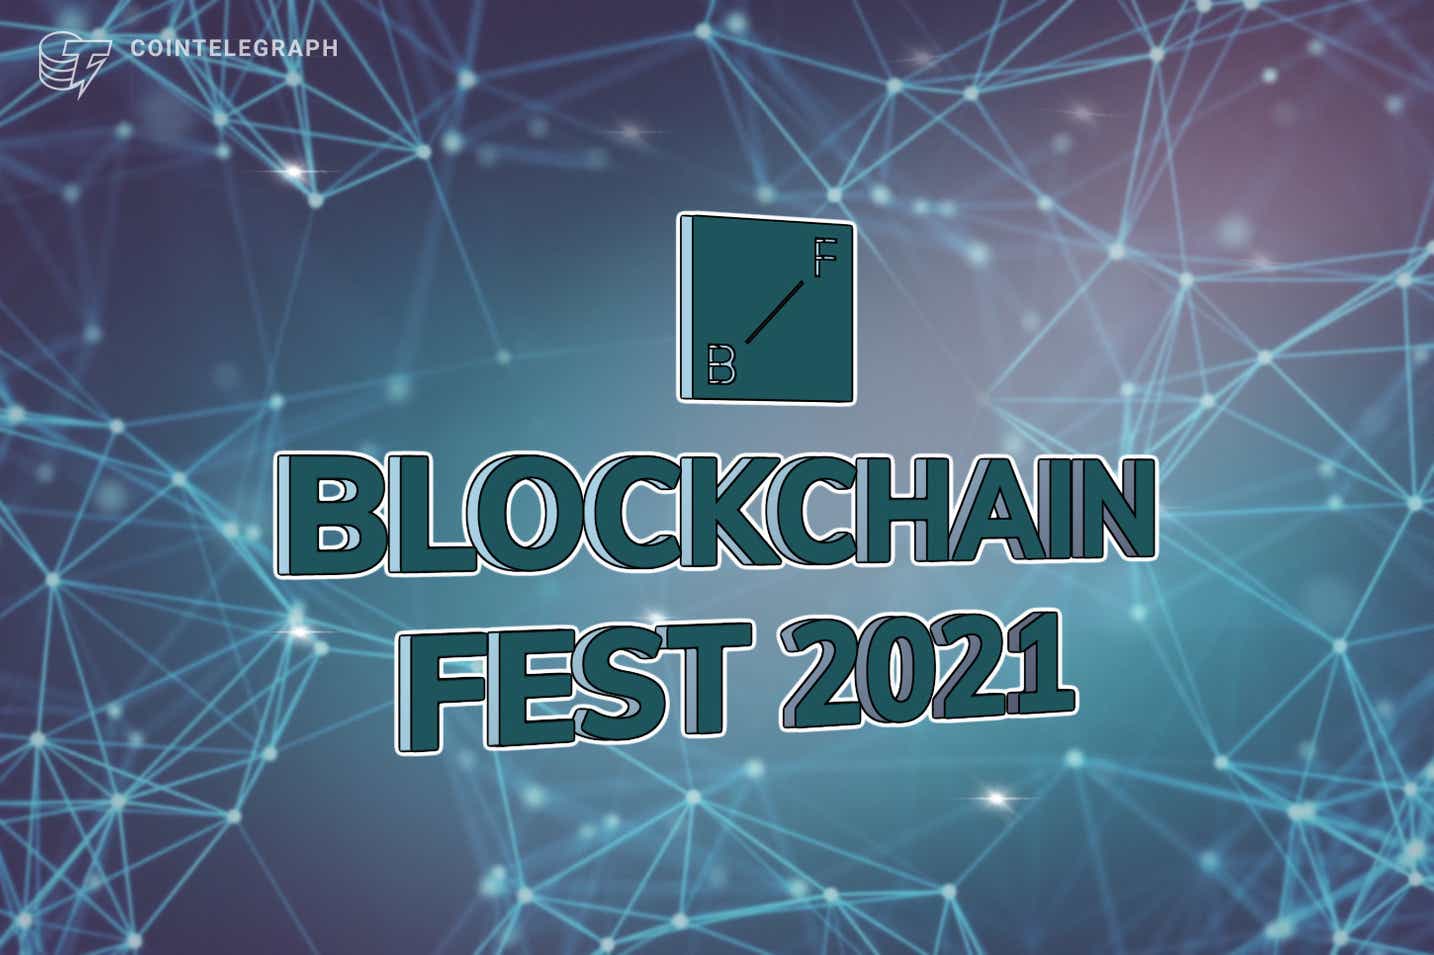 Blockchain Fest 2021 mang đến thiết lập đầy tham vọng cho mạng lưới và thương mại fintech hiện đại